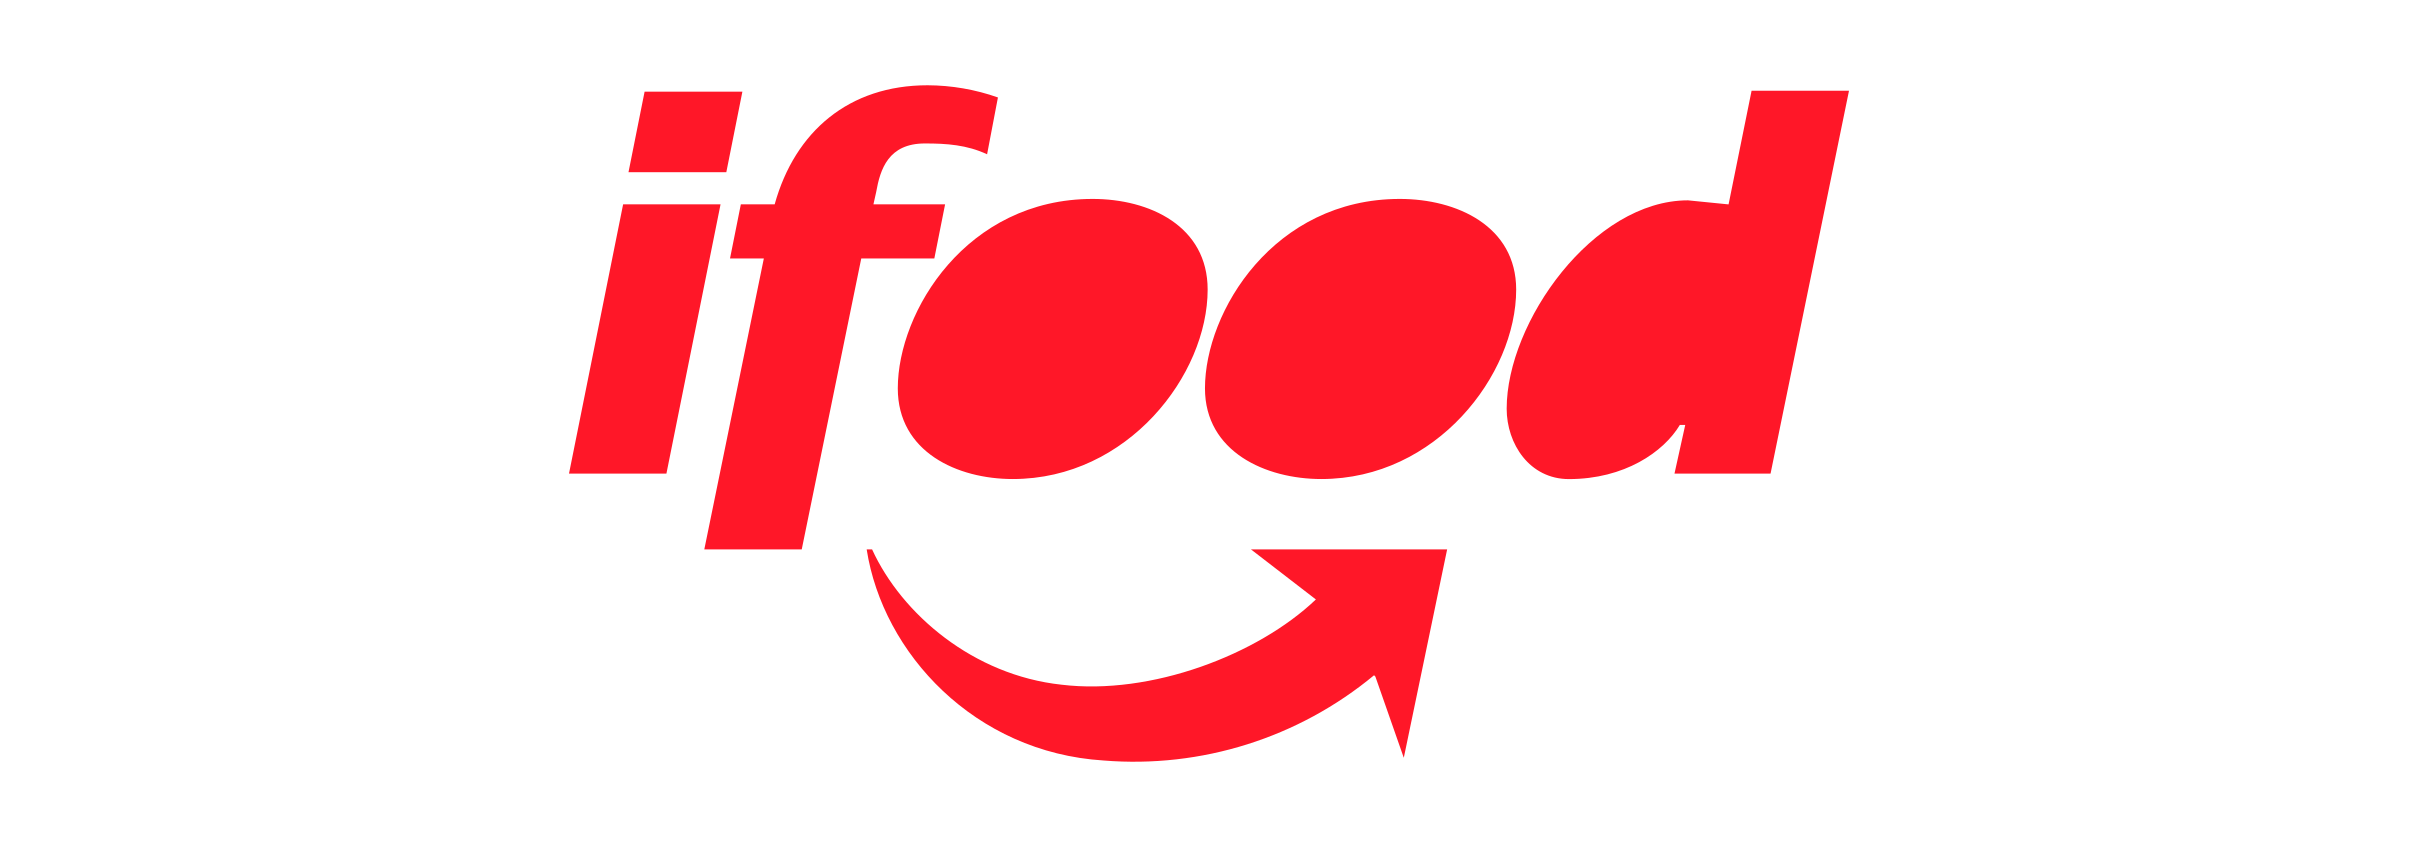 IFood_logo